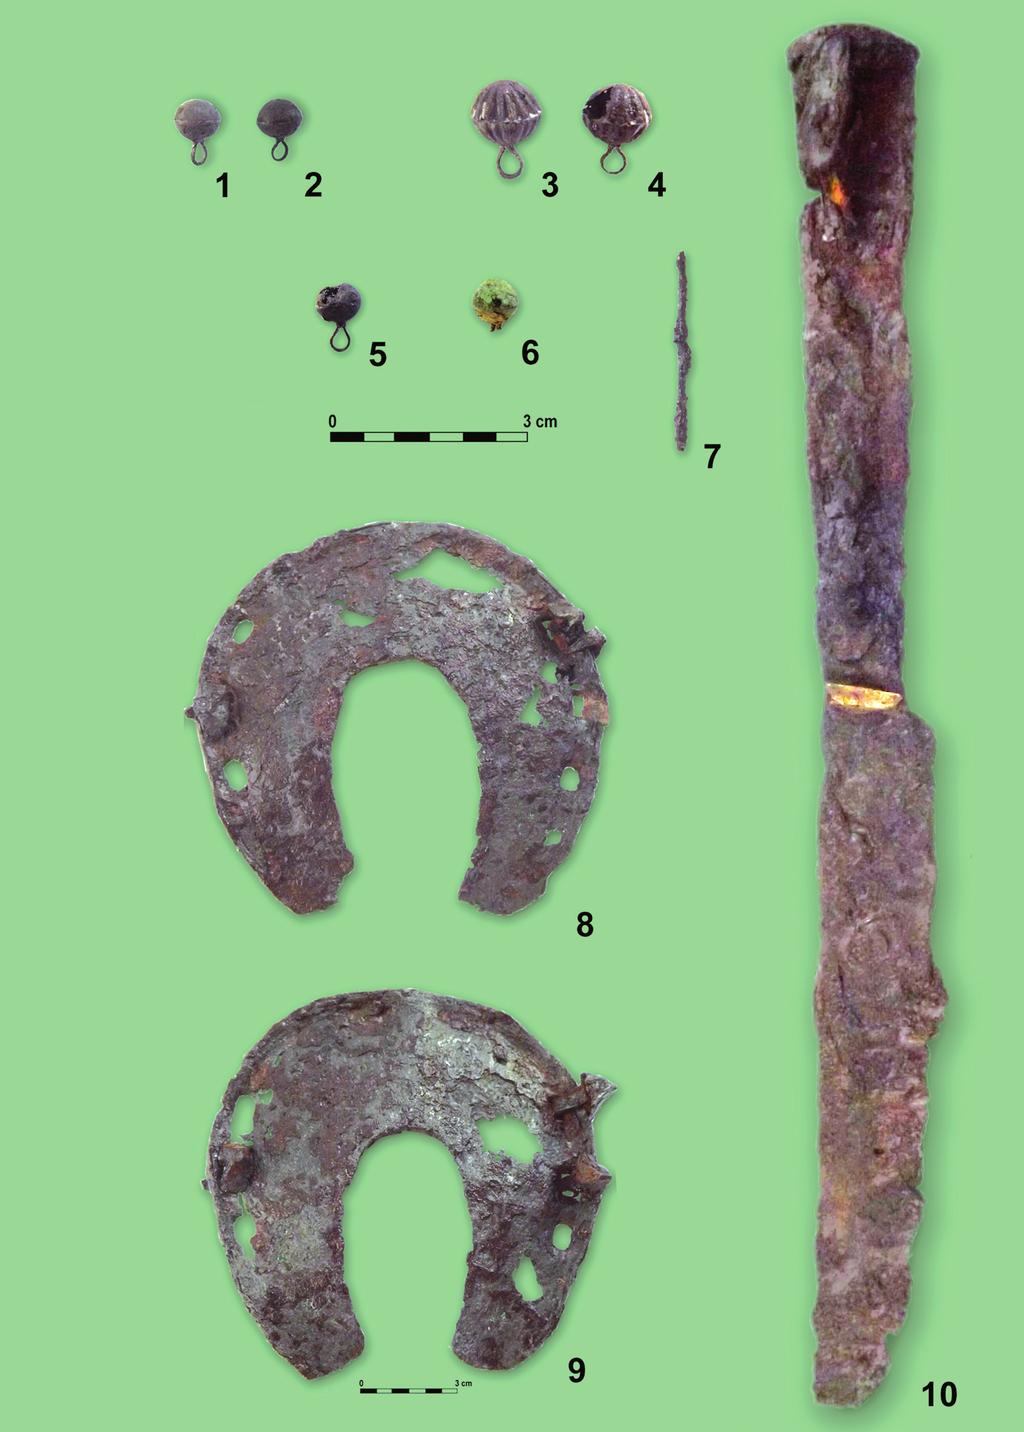 Török kori temetőrészlet Kaposváron 245 4. tábla. A feltárt sírokban talált leletanyag. 1-4. füles-gombok (5.